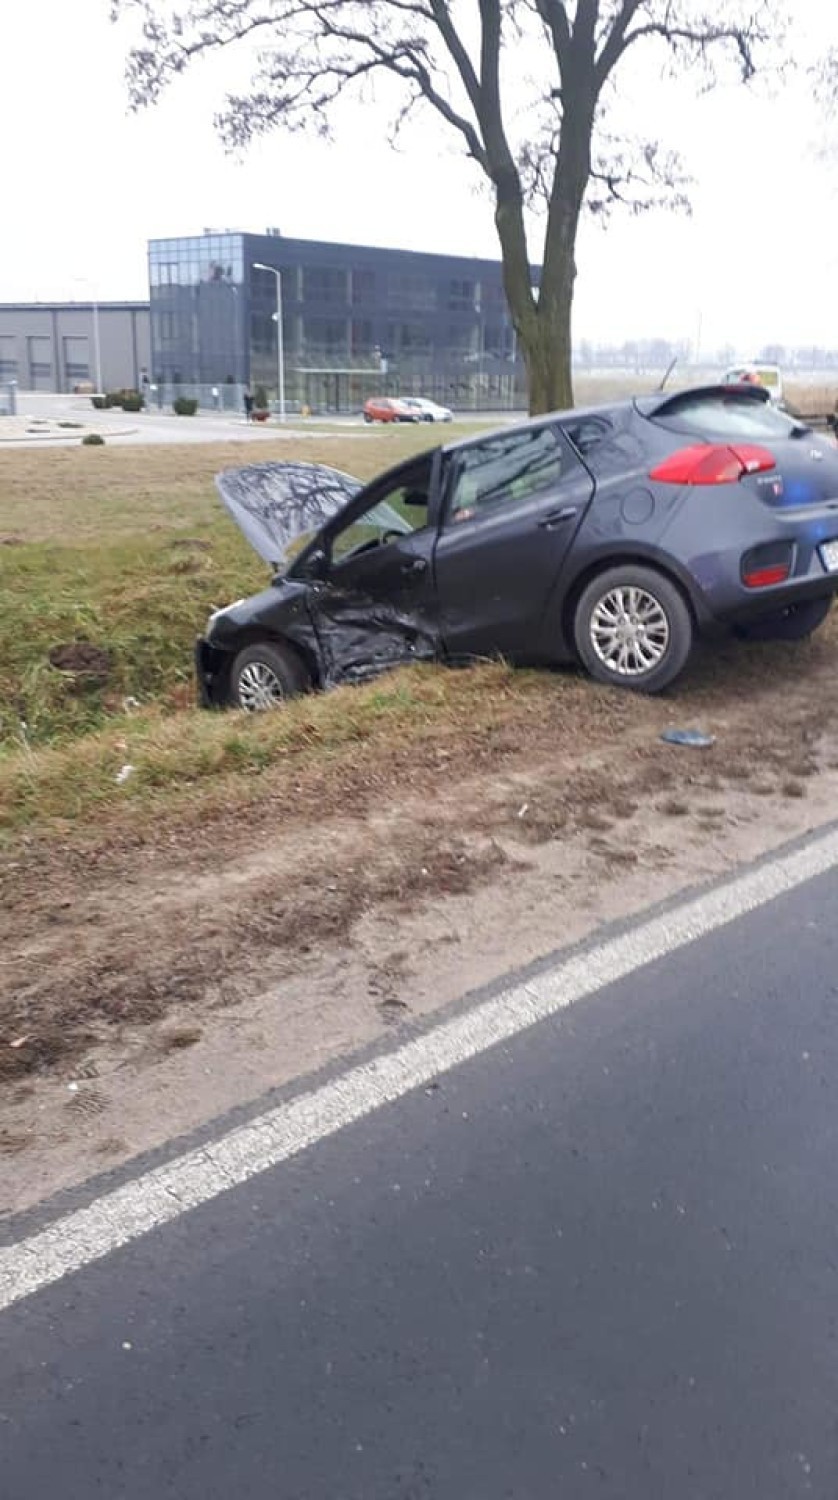 Wypadek na ul. Piotrkowskiej w Opocznie. Dwie osoby poszkodowane [ZDJĘCIA]